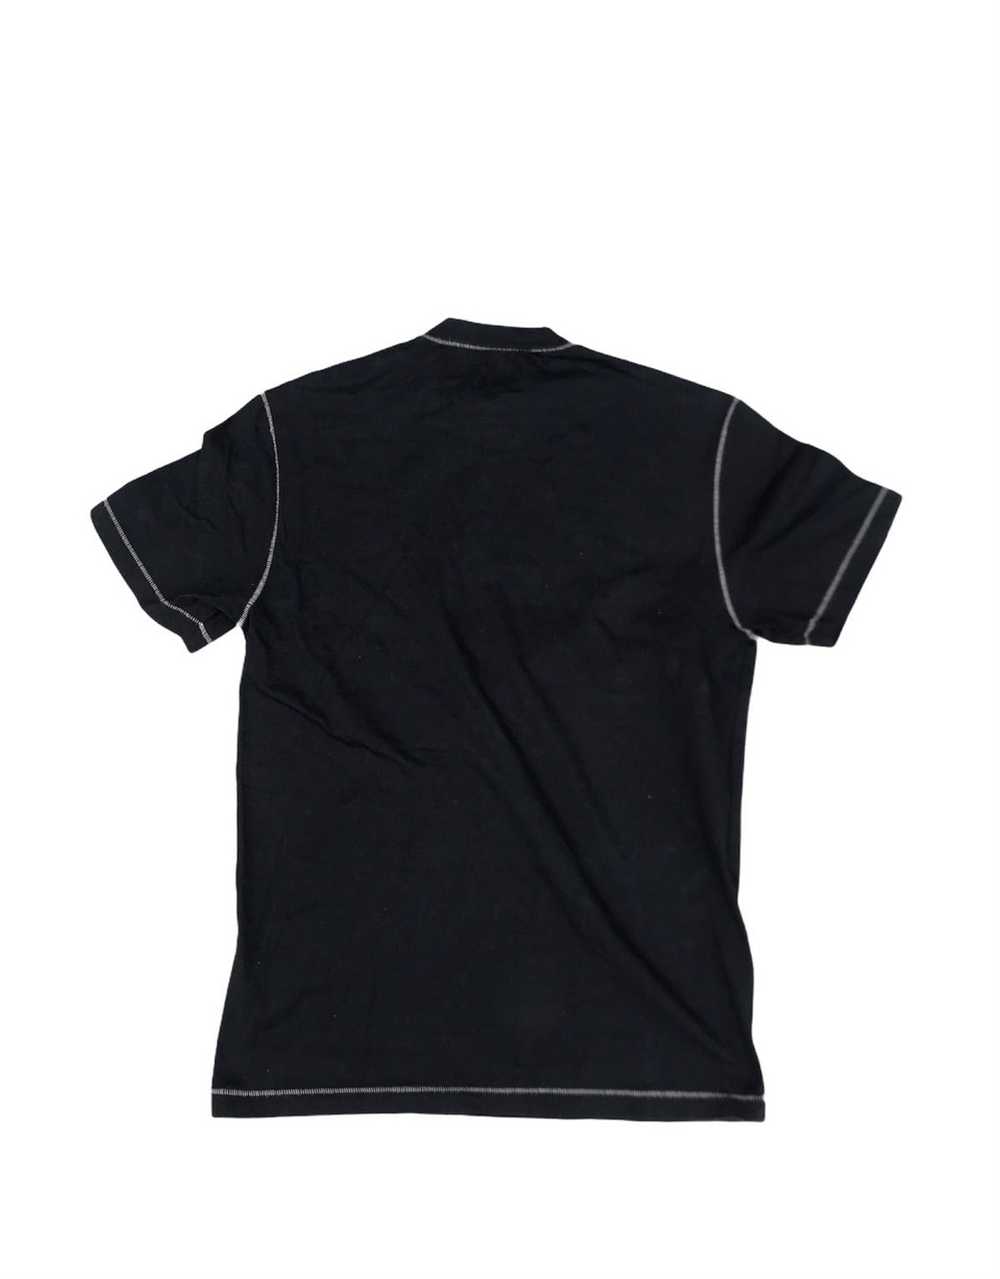 Jil Sander Jil Sander Black Plain Tshirt - image 2